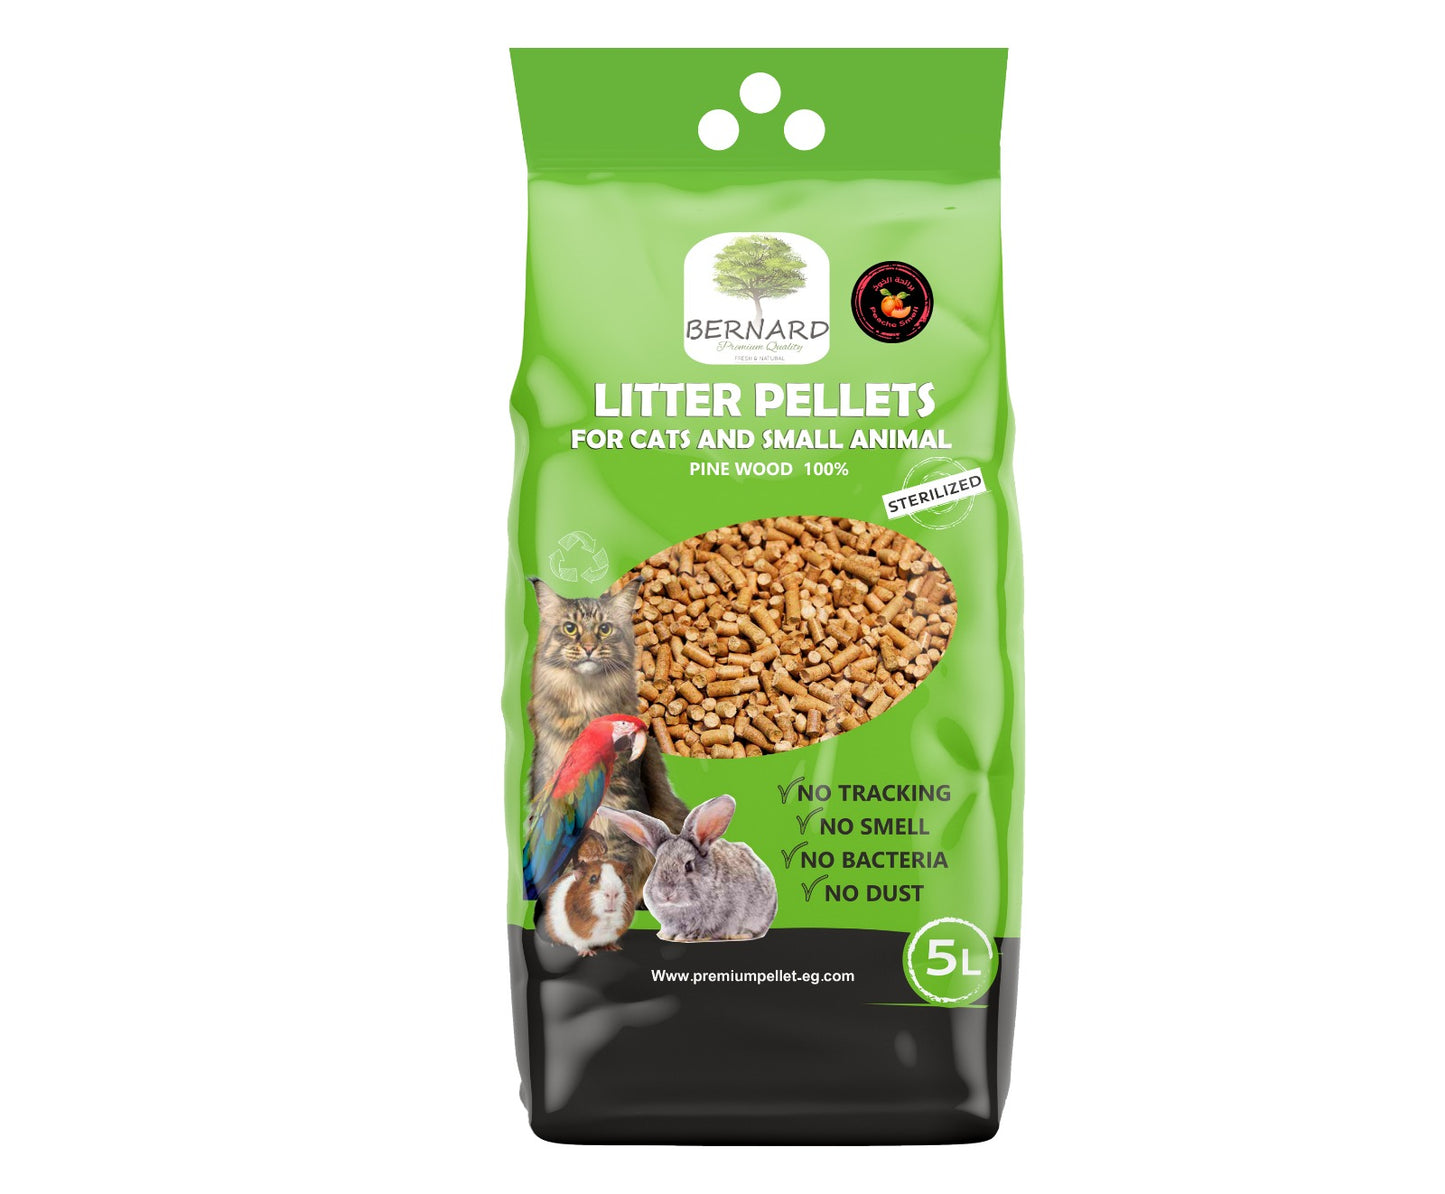 BERNARD wood pellets cat litter 5 L - Petfriend stores بتفريند ستورز